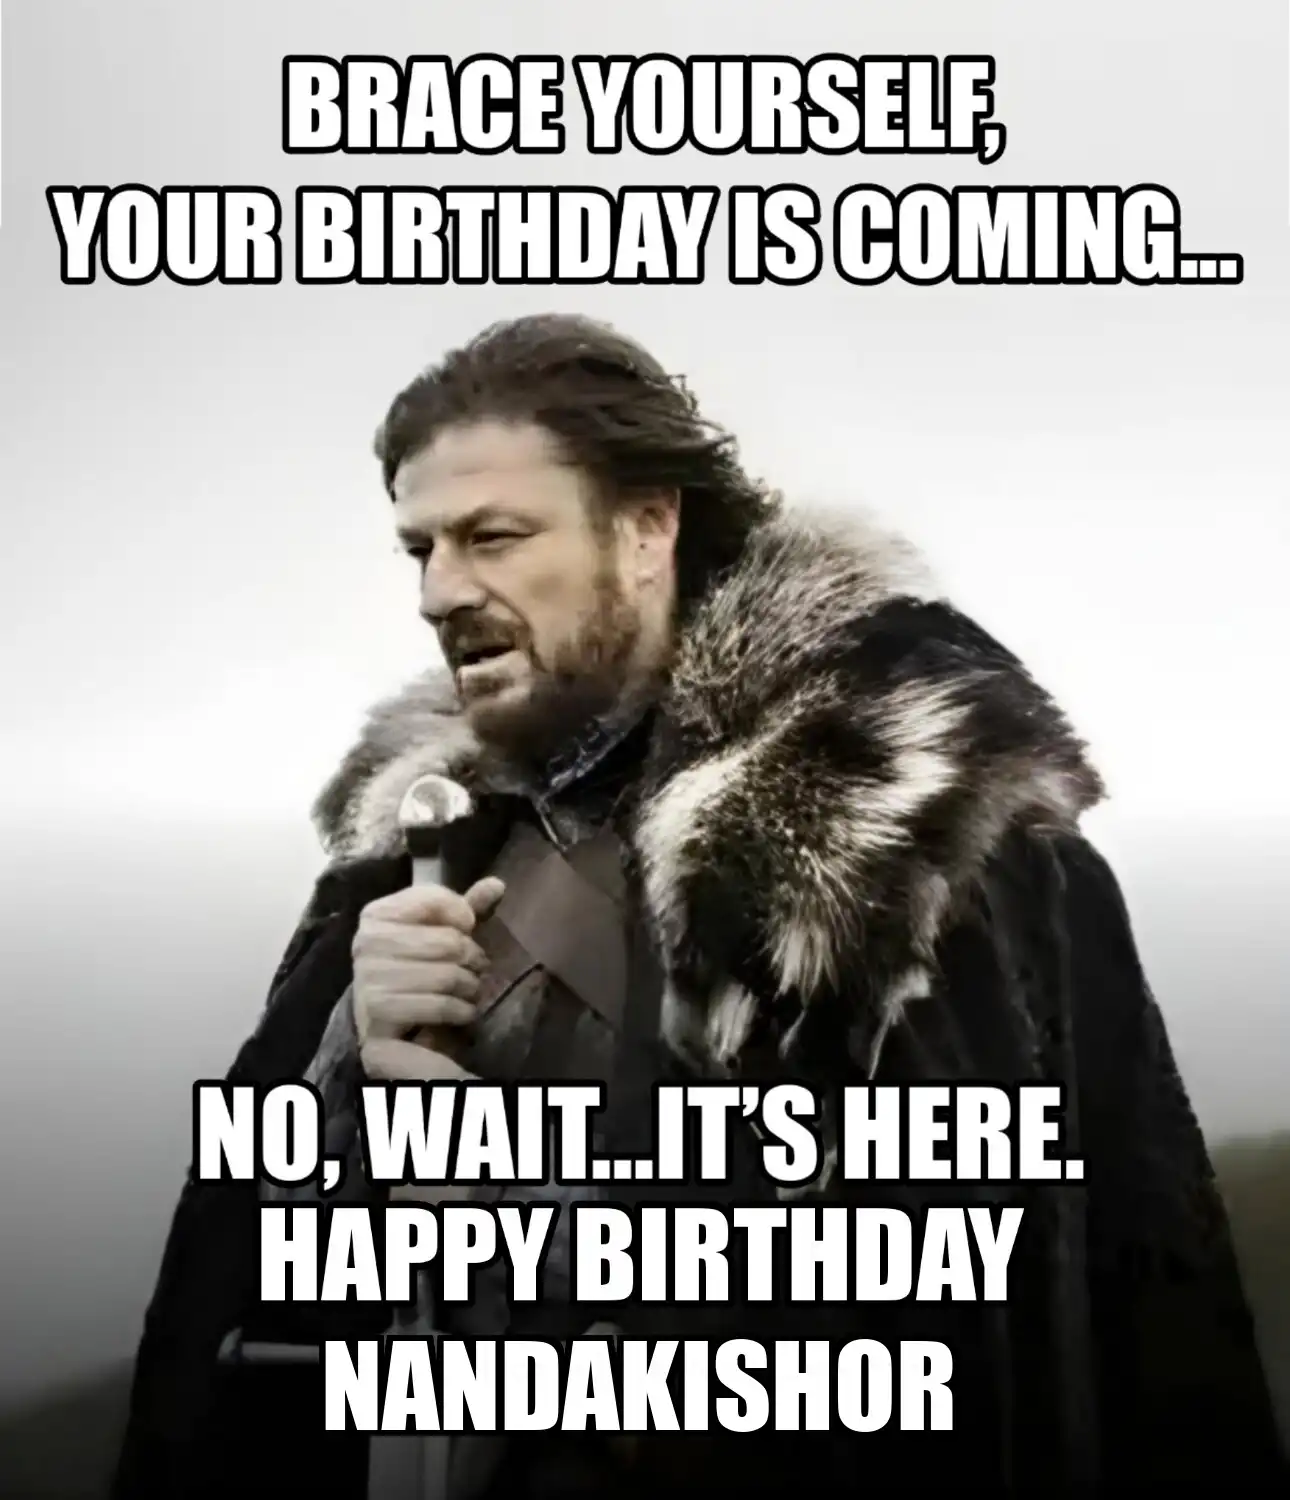 Happy Birthday Nandakishor Brace Yourself Your Birthday Is Coming Meme